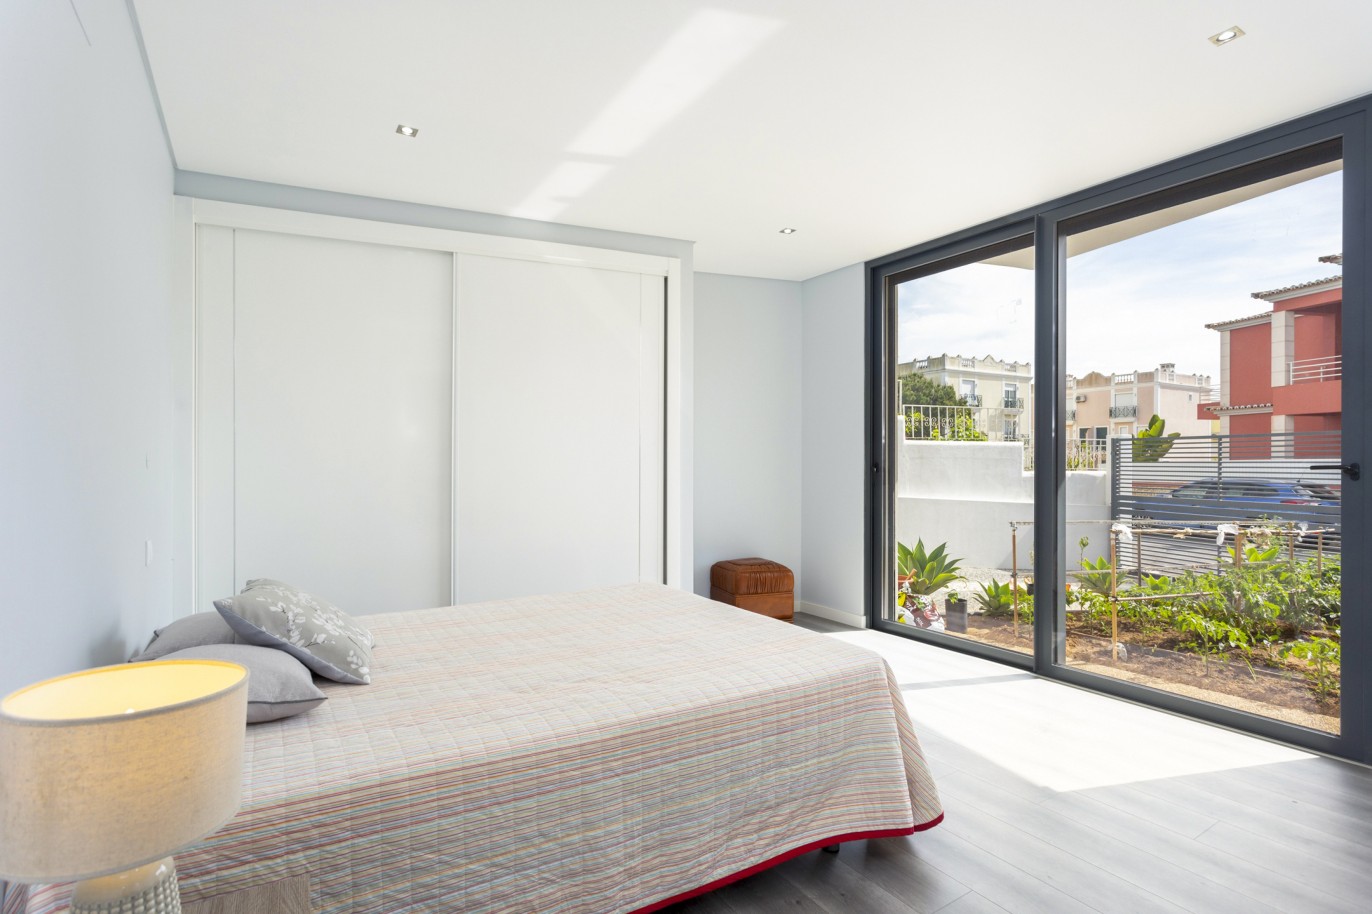 4 bedroom luxury detached villa with pool, in Bemposta, Algarve_224036